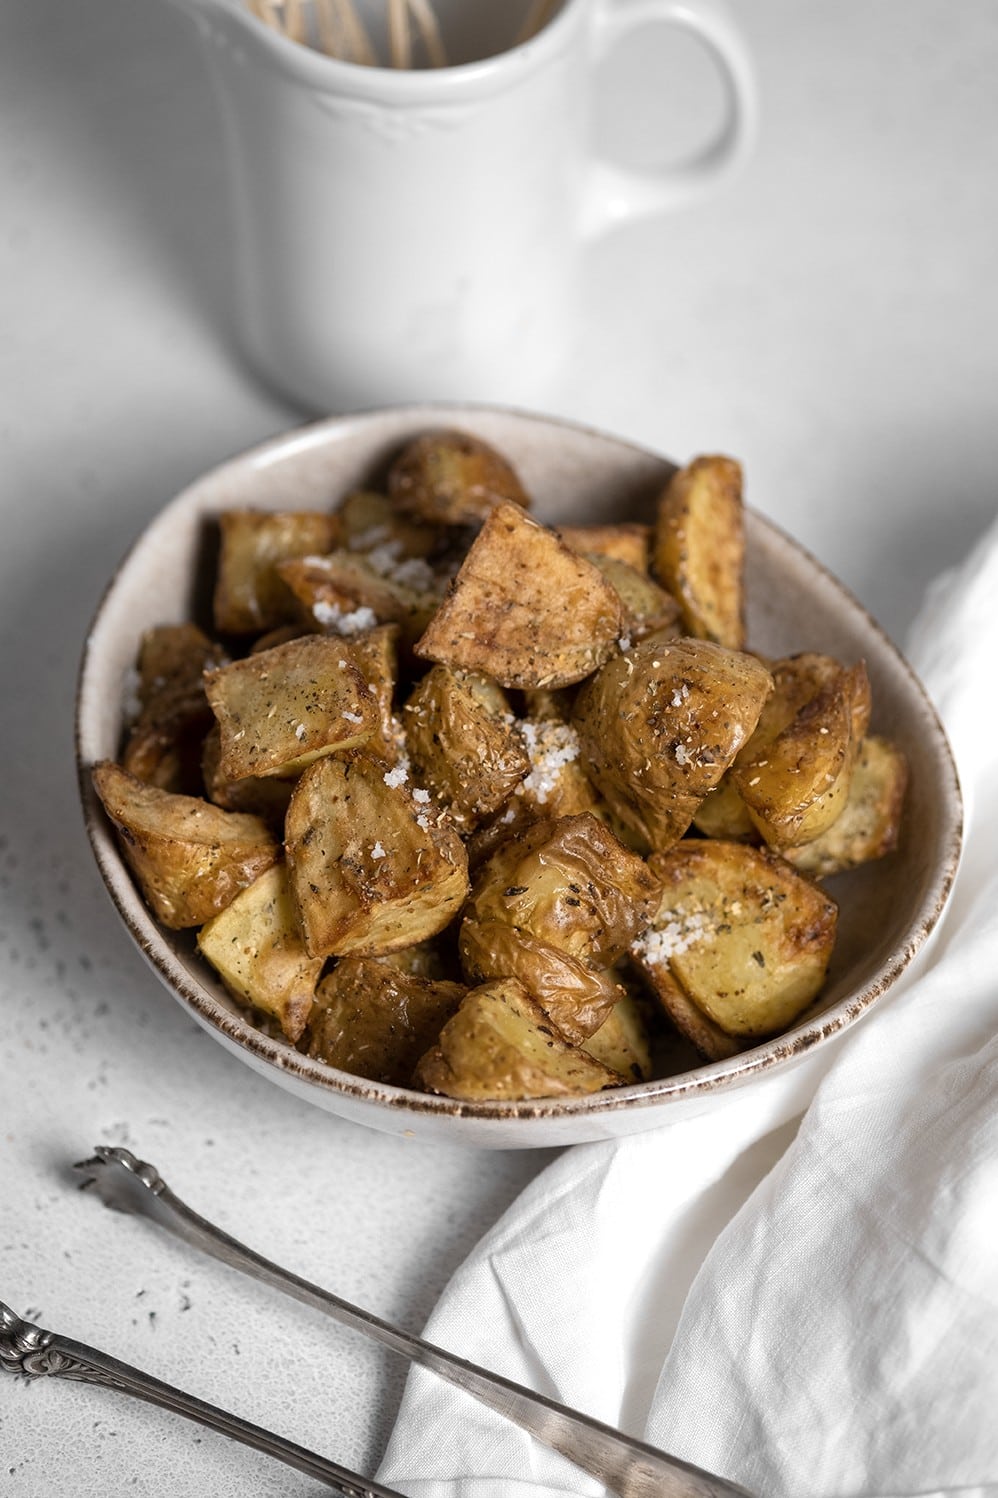 Röstis de pommes de terre - Recette EASY FRY GRILL & STEAM 3 in 1